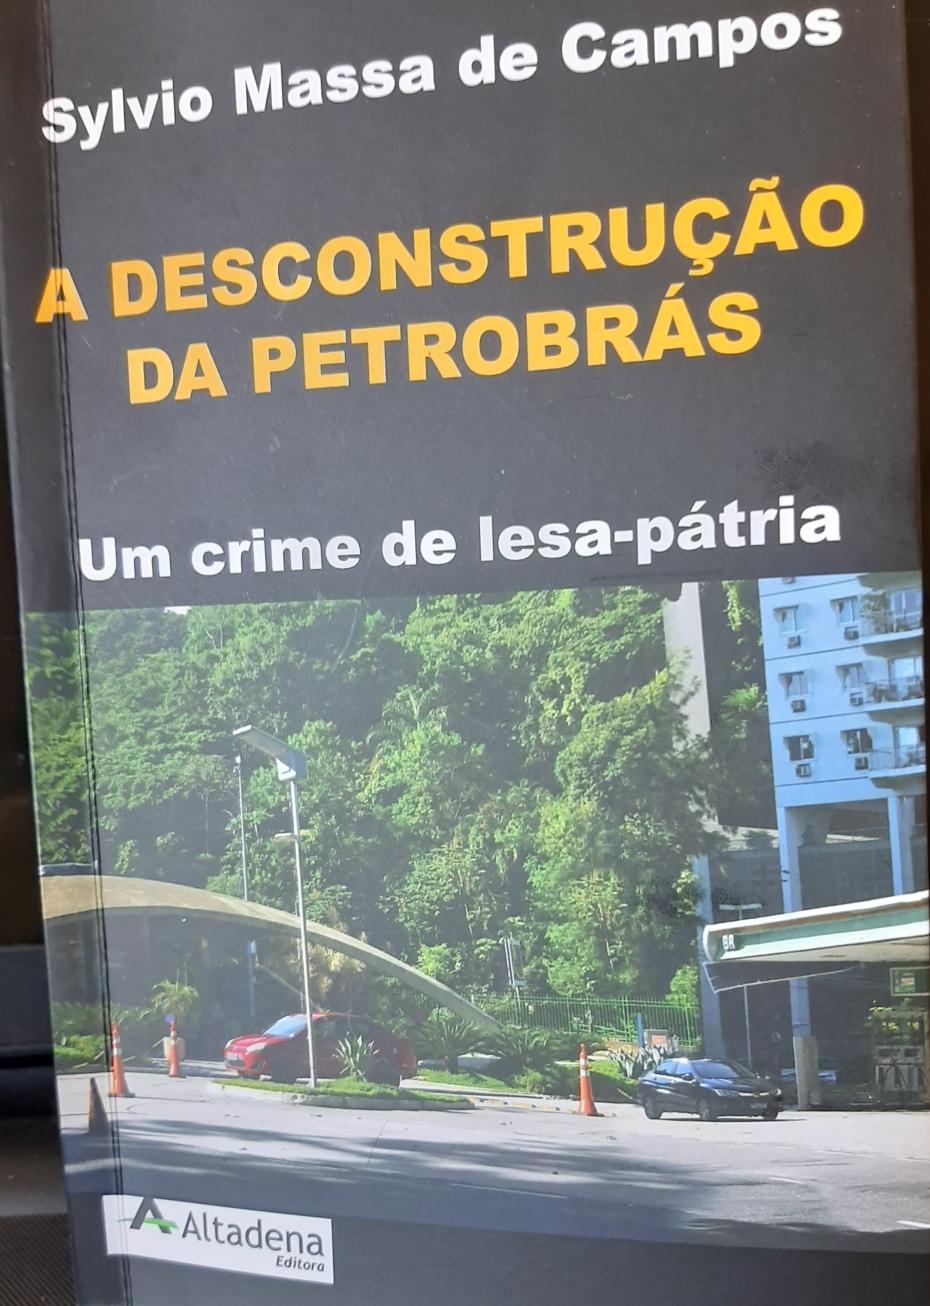 Sylvio Massa denuncia em livro a desconstrução da Petrobrás: “Um crime de lesa-pátria”